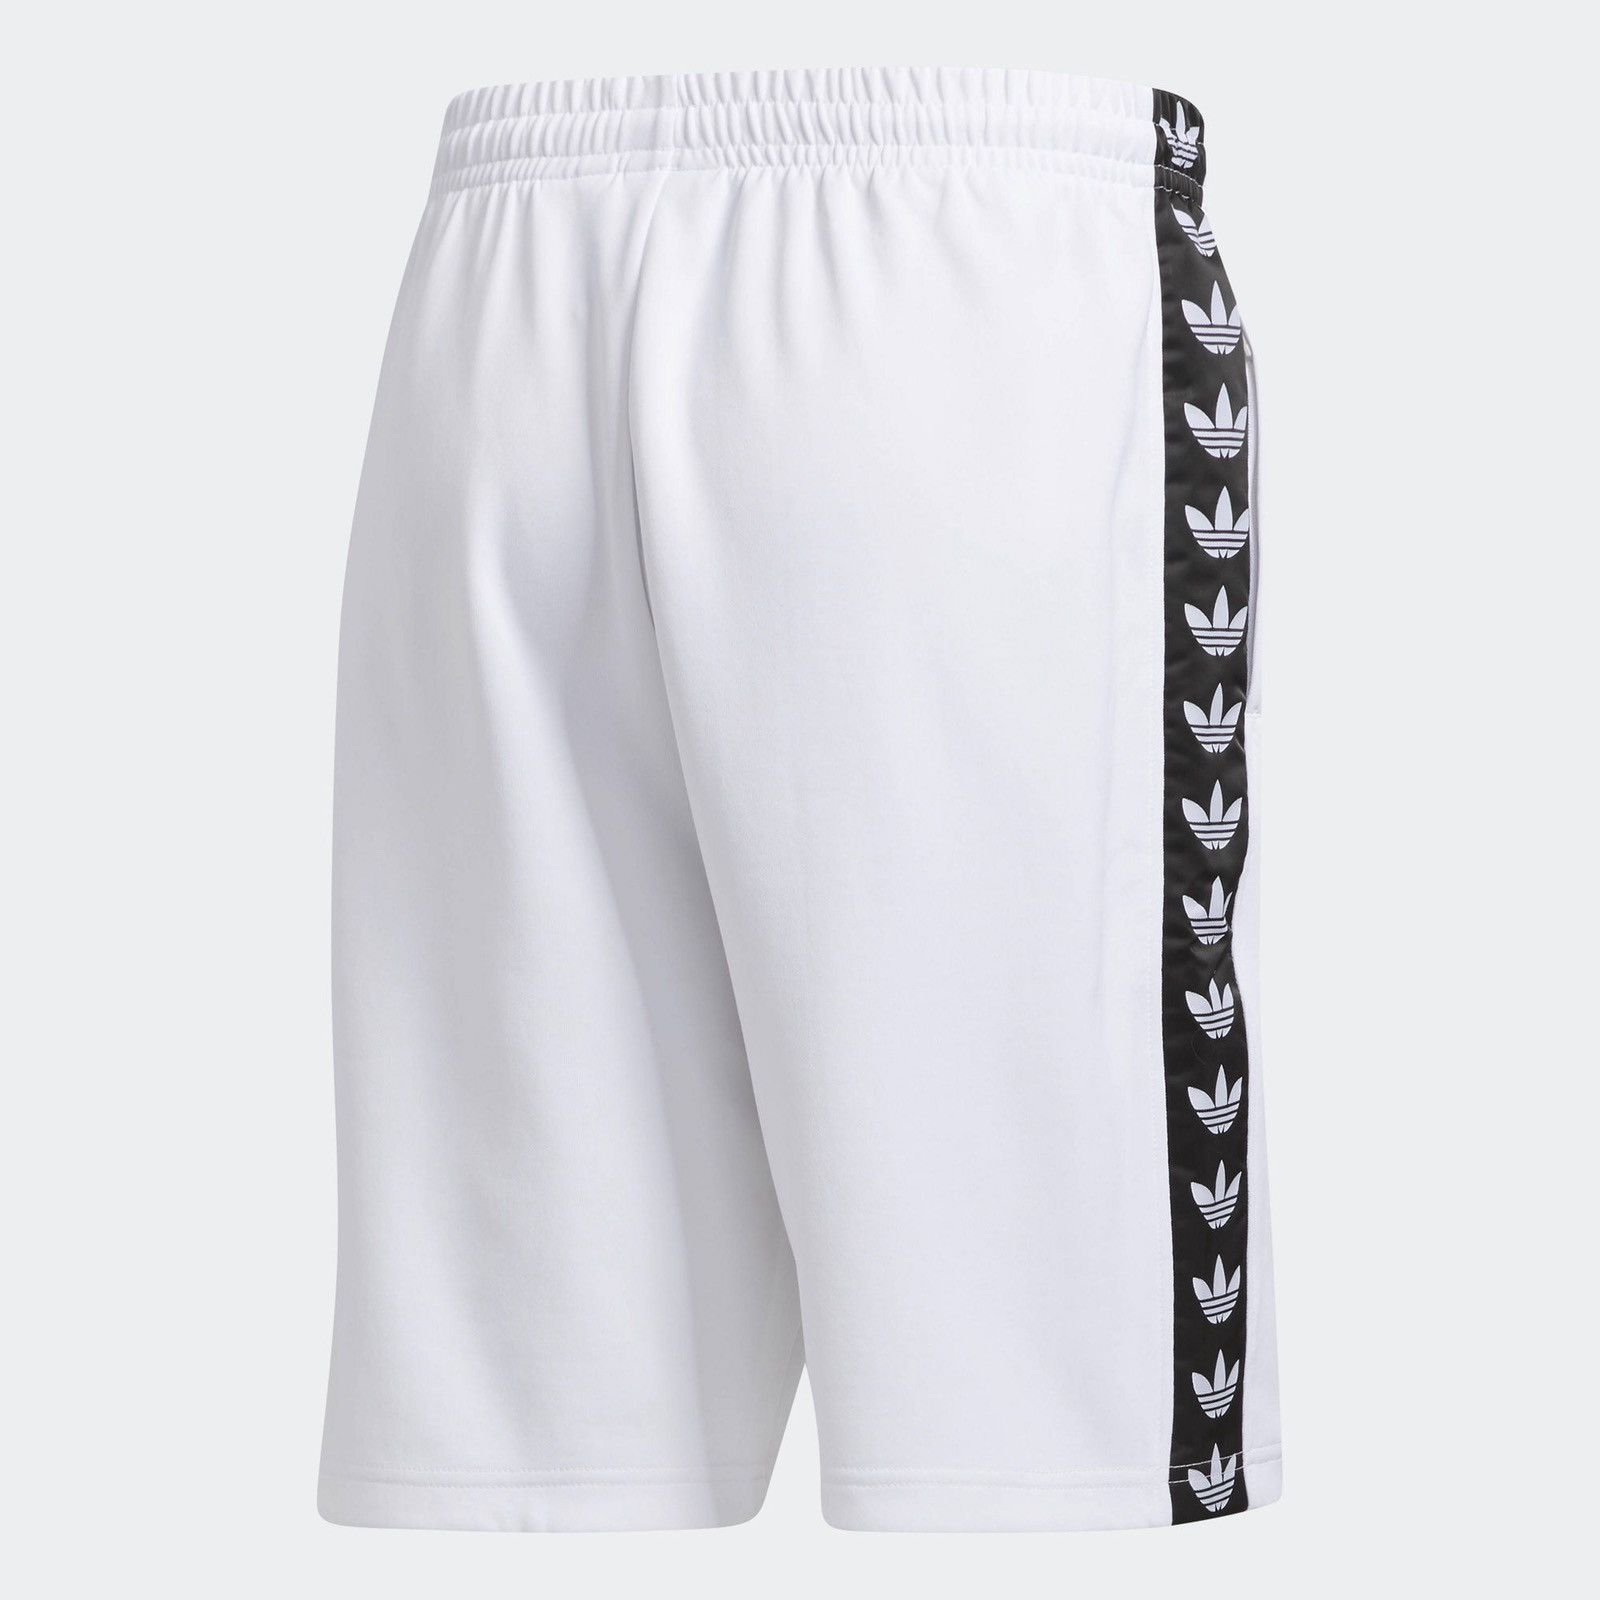 Adidas TNT Shorts Size US 28 / EU 44 - 3 Thumbnail